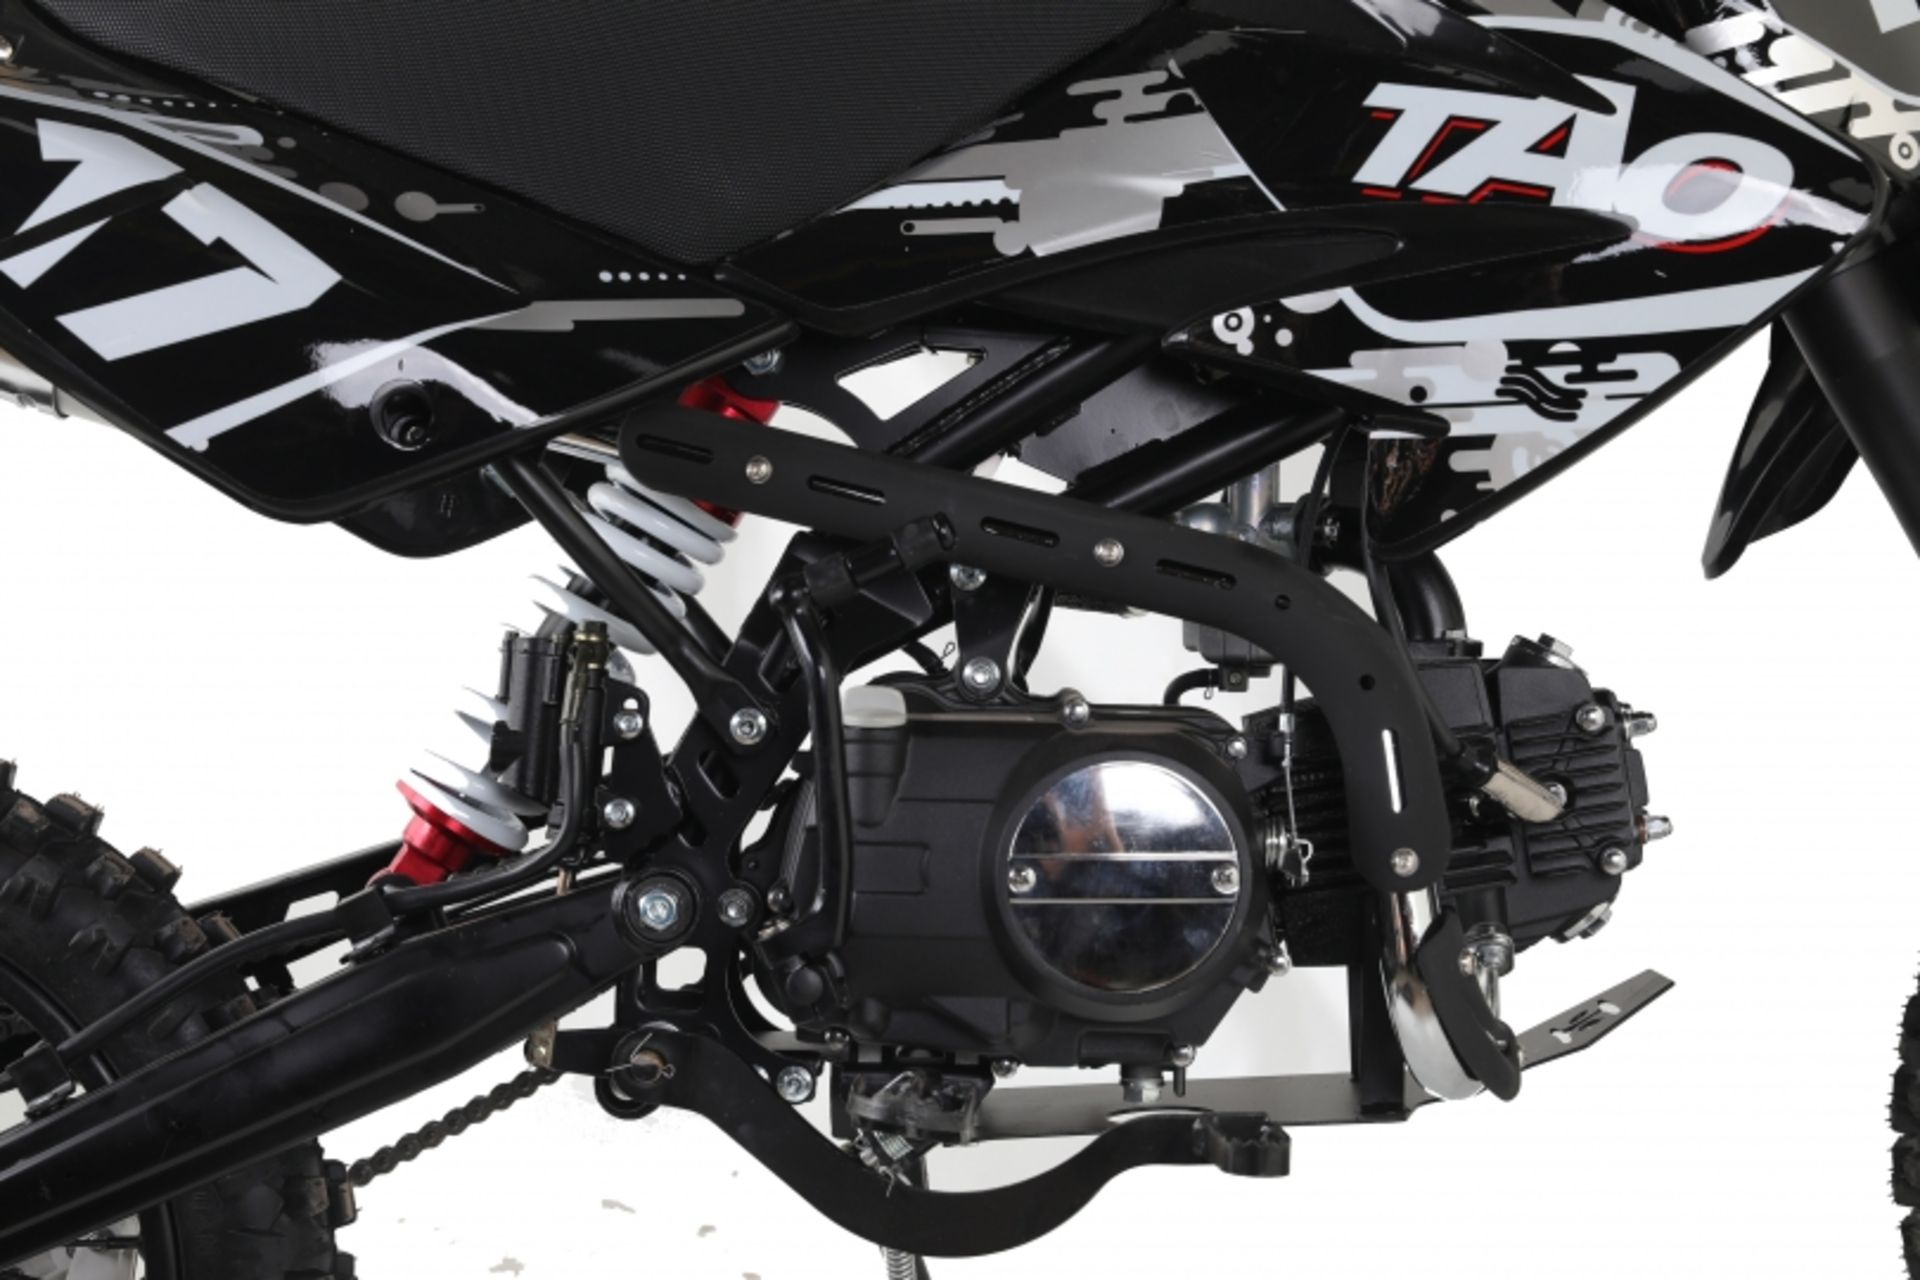 V Brand New 125cc USA Motocross Dirt Bike - Kick Start - Air Cooled - 4 Stroke - Full Suspension - - Image 2 of 5